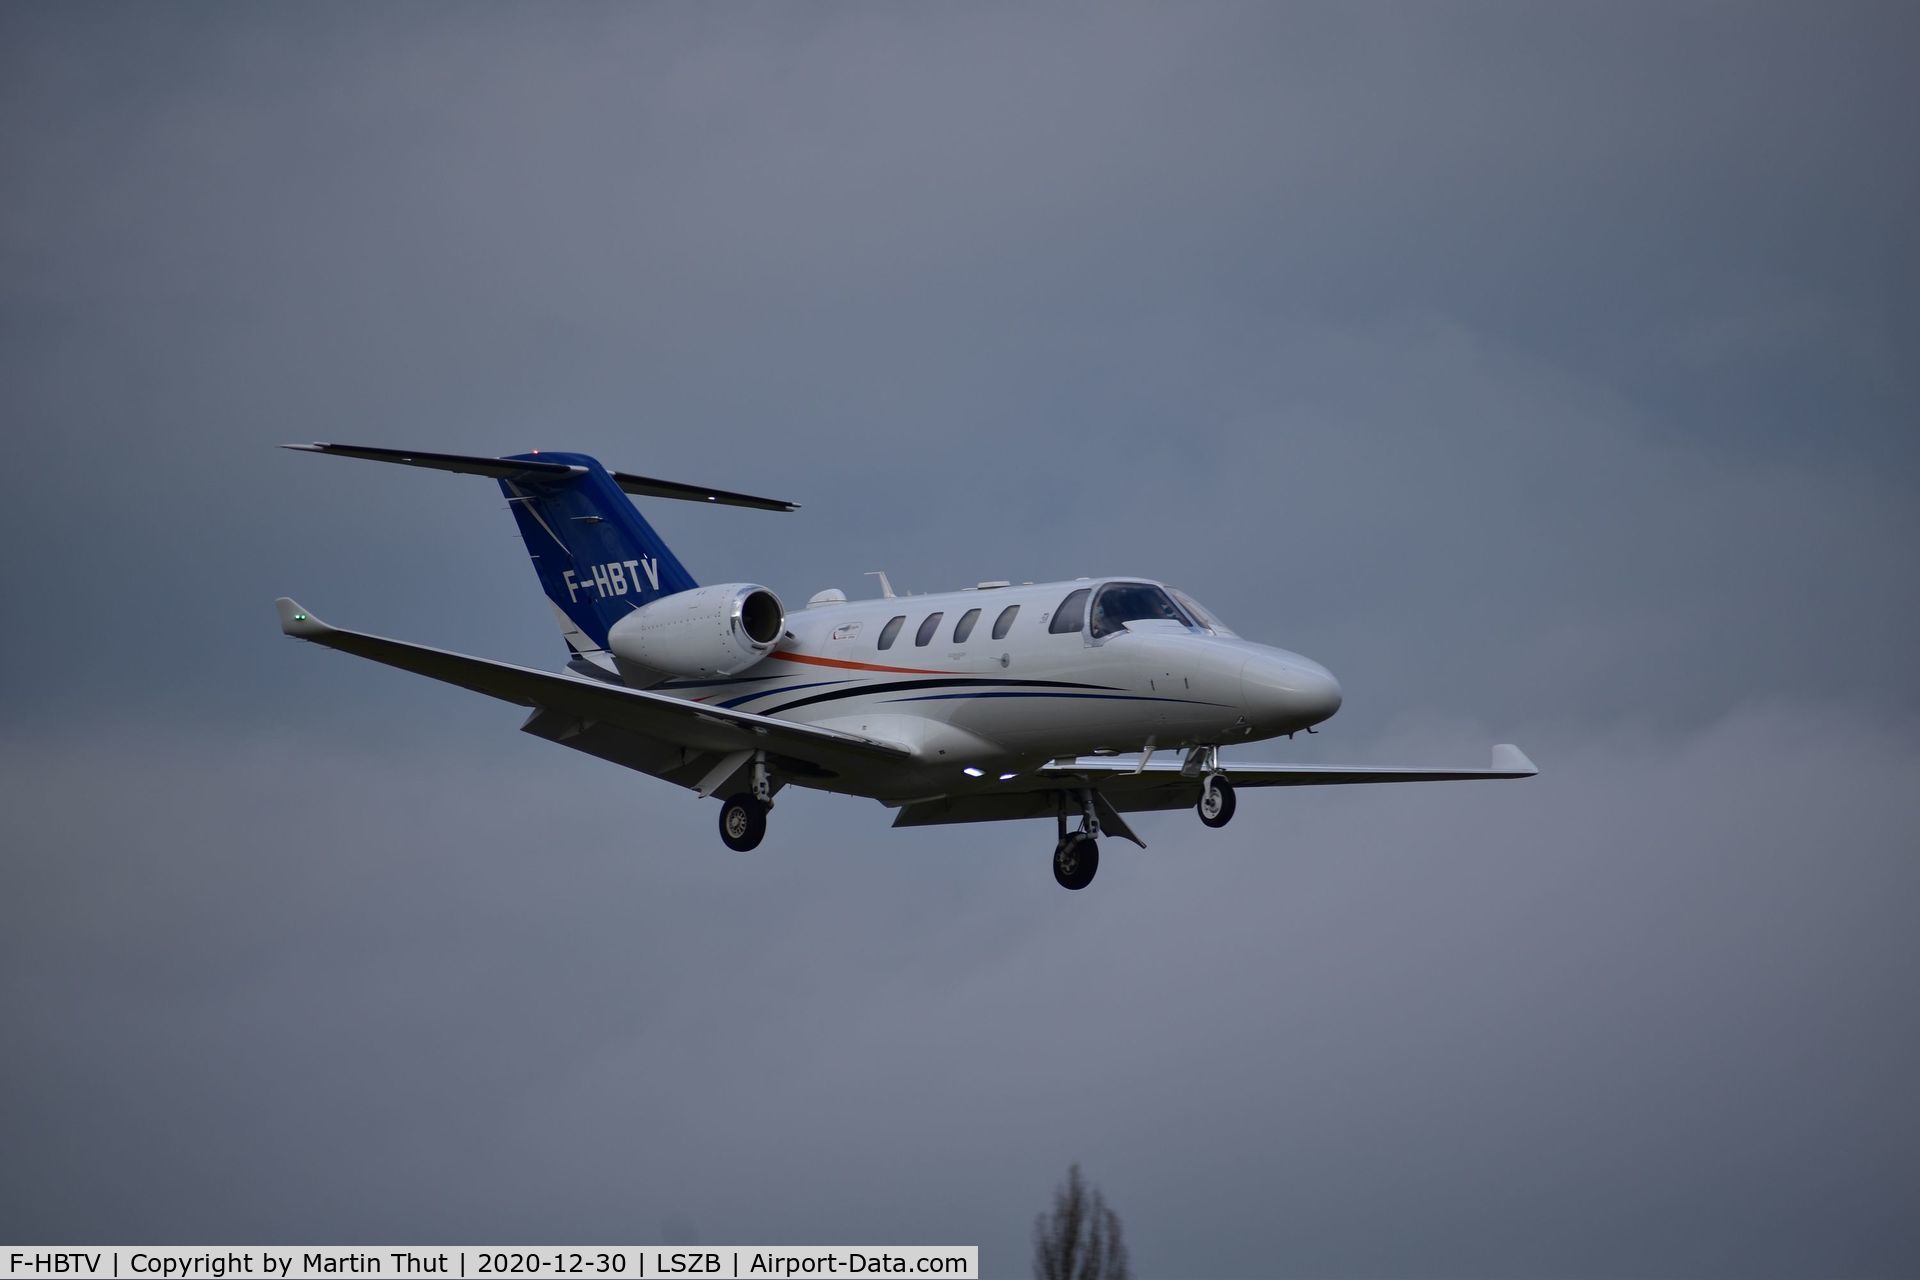 F-HBTV, 2016 Cessna 525 Citation M2 C/N 525-0918, Astonjet F-HBTV landing from Paris le Bourget.